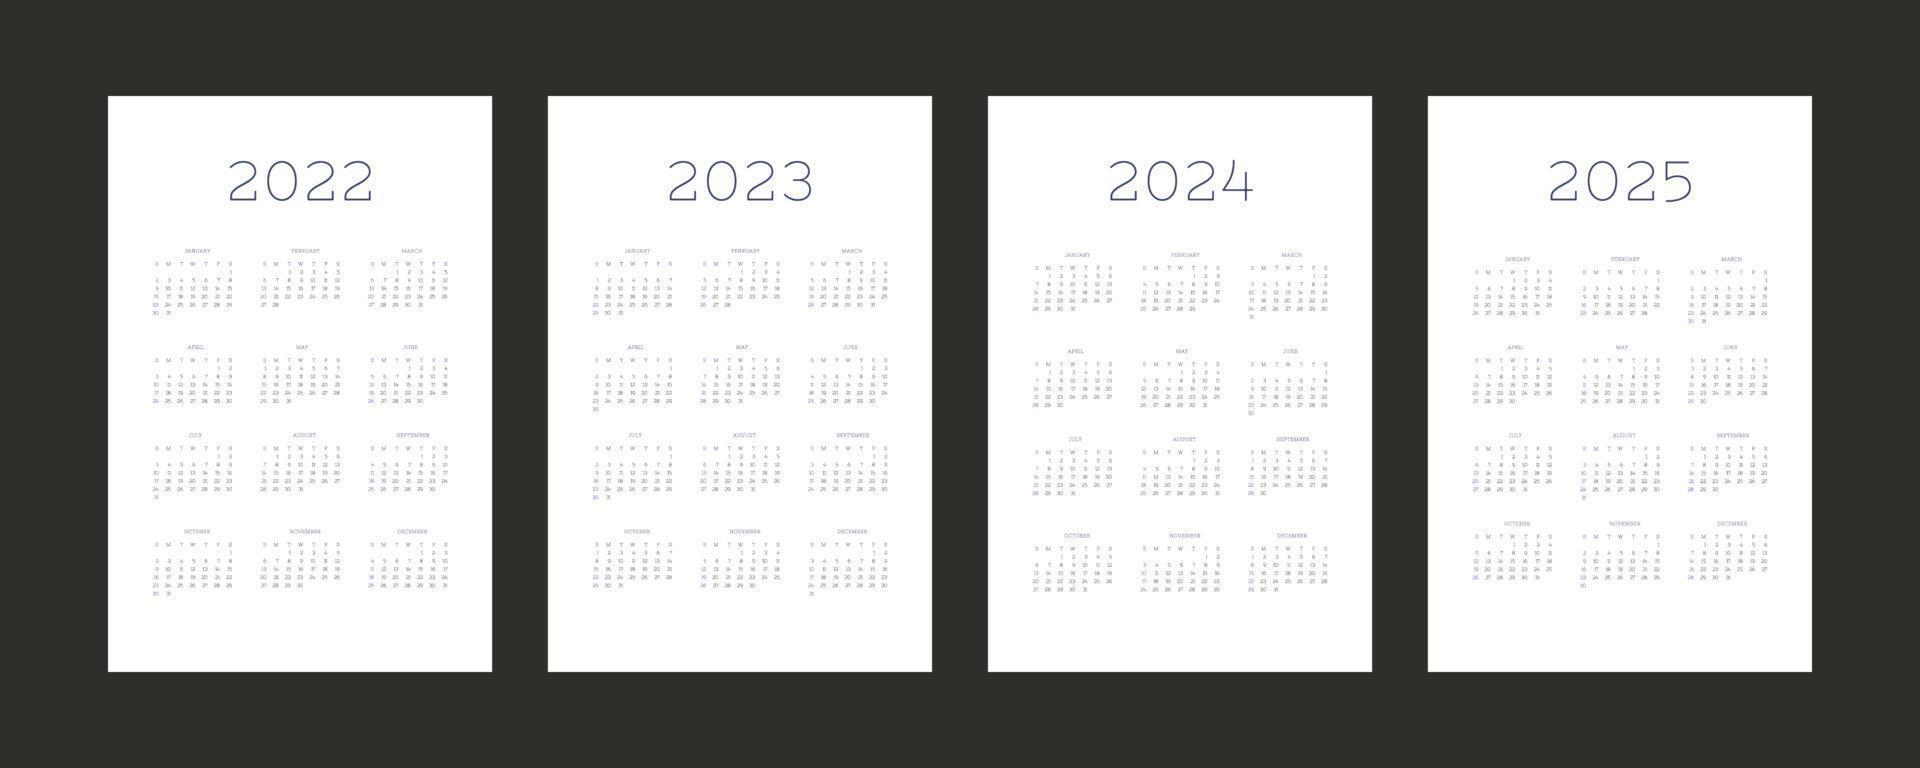 2022 2023 2024 2025 Kalender individuelle Zeitplanvorlage im minimalistischen trendigen Stil. Woche beginnt am Sonntag vektor